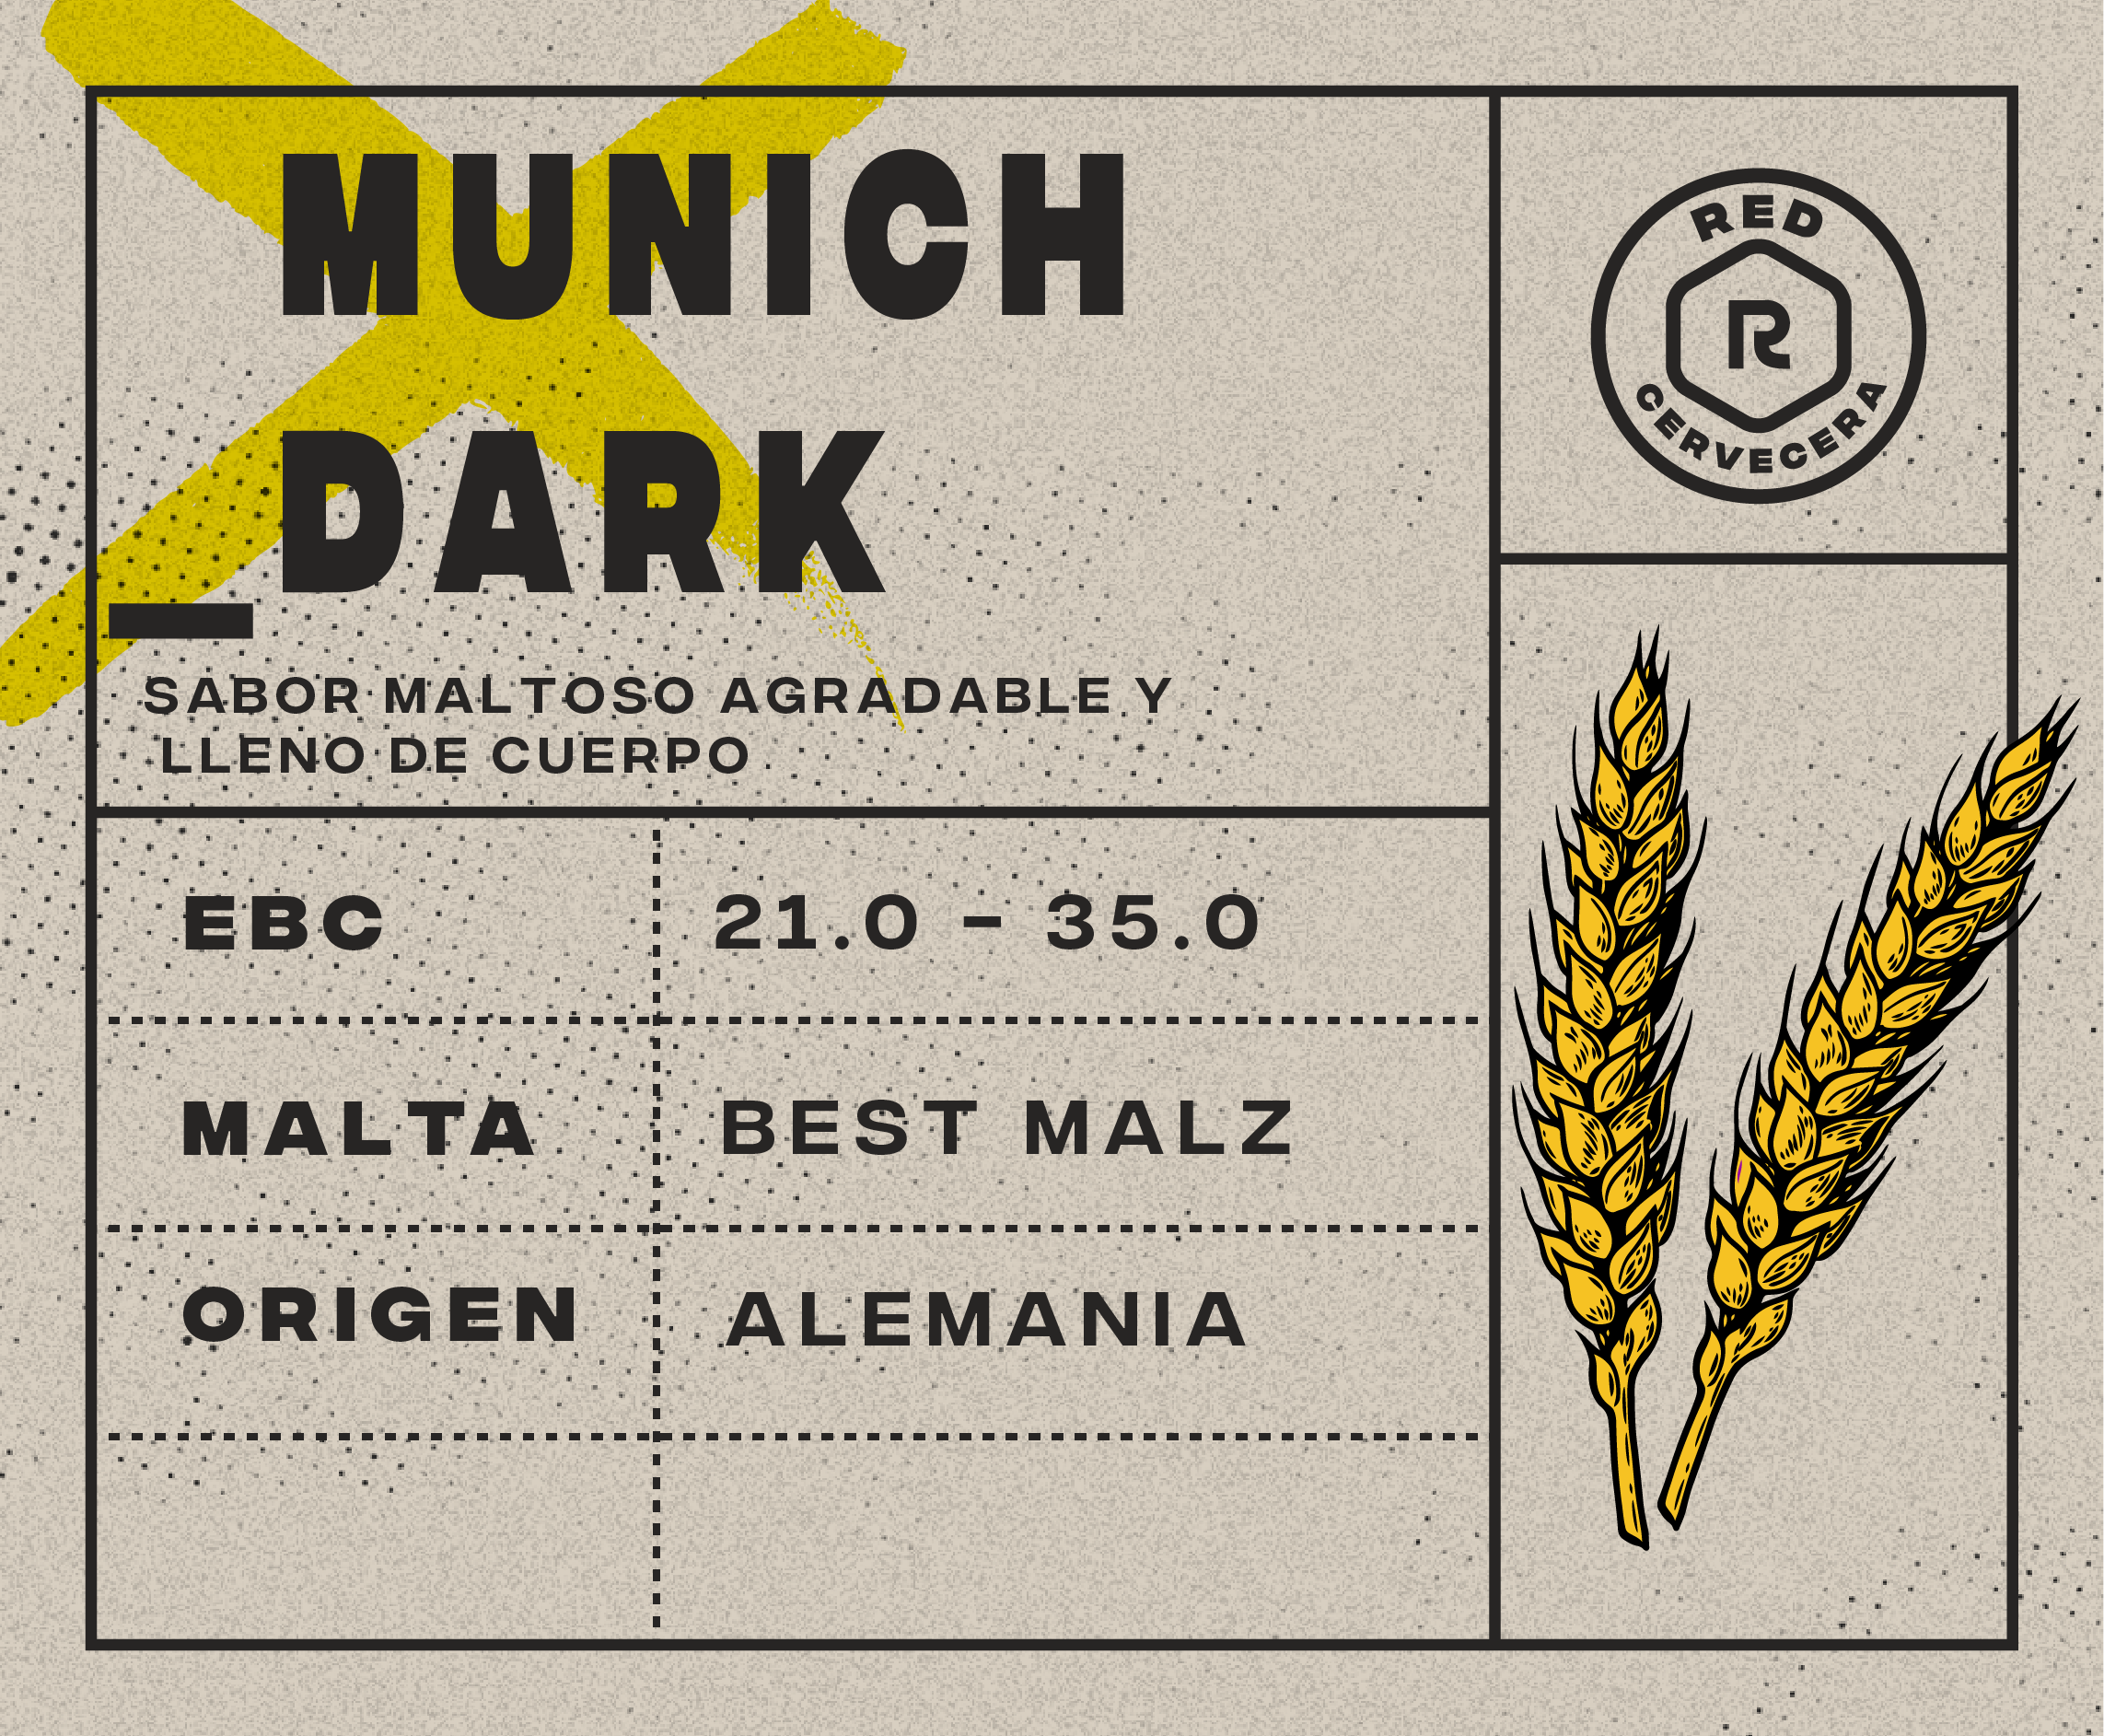 06-Munich Dark (EBC 21.0-35.0) (1 Kg.)